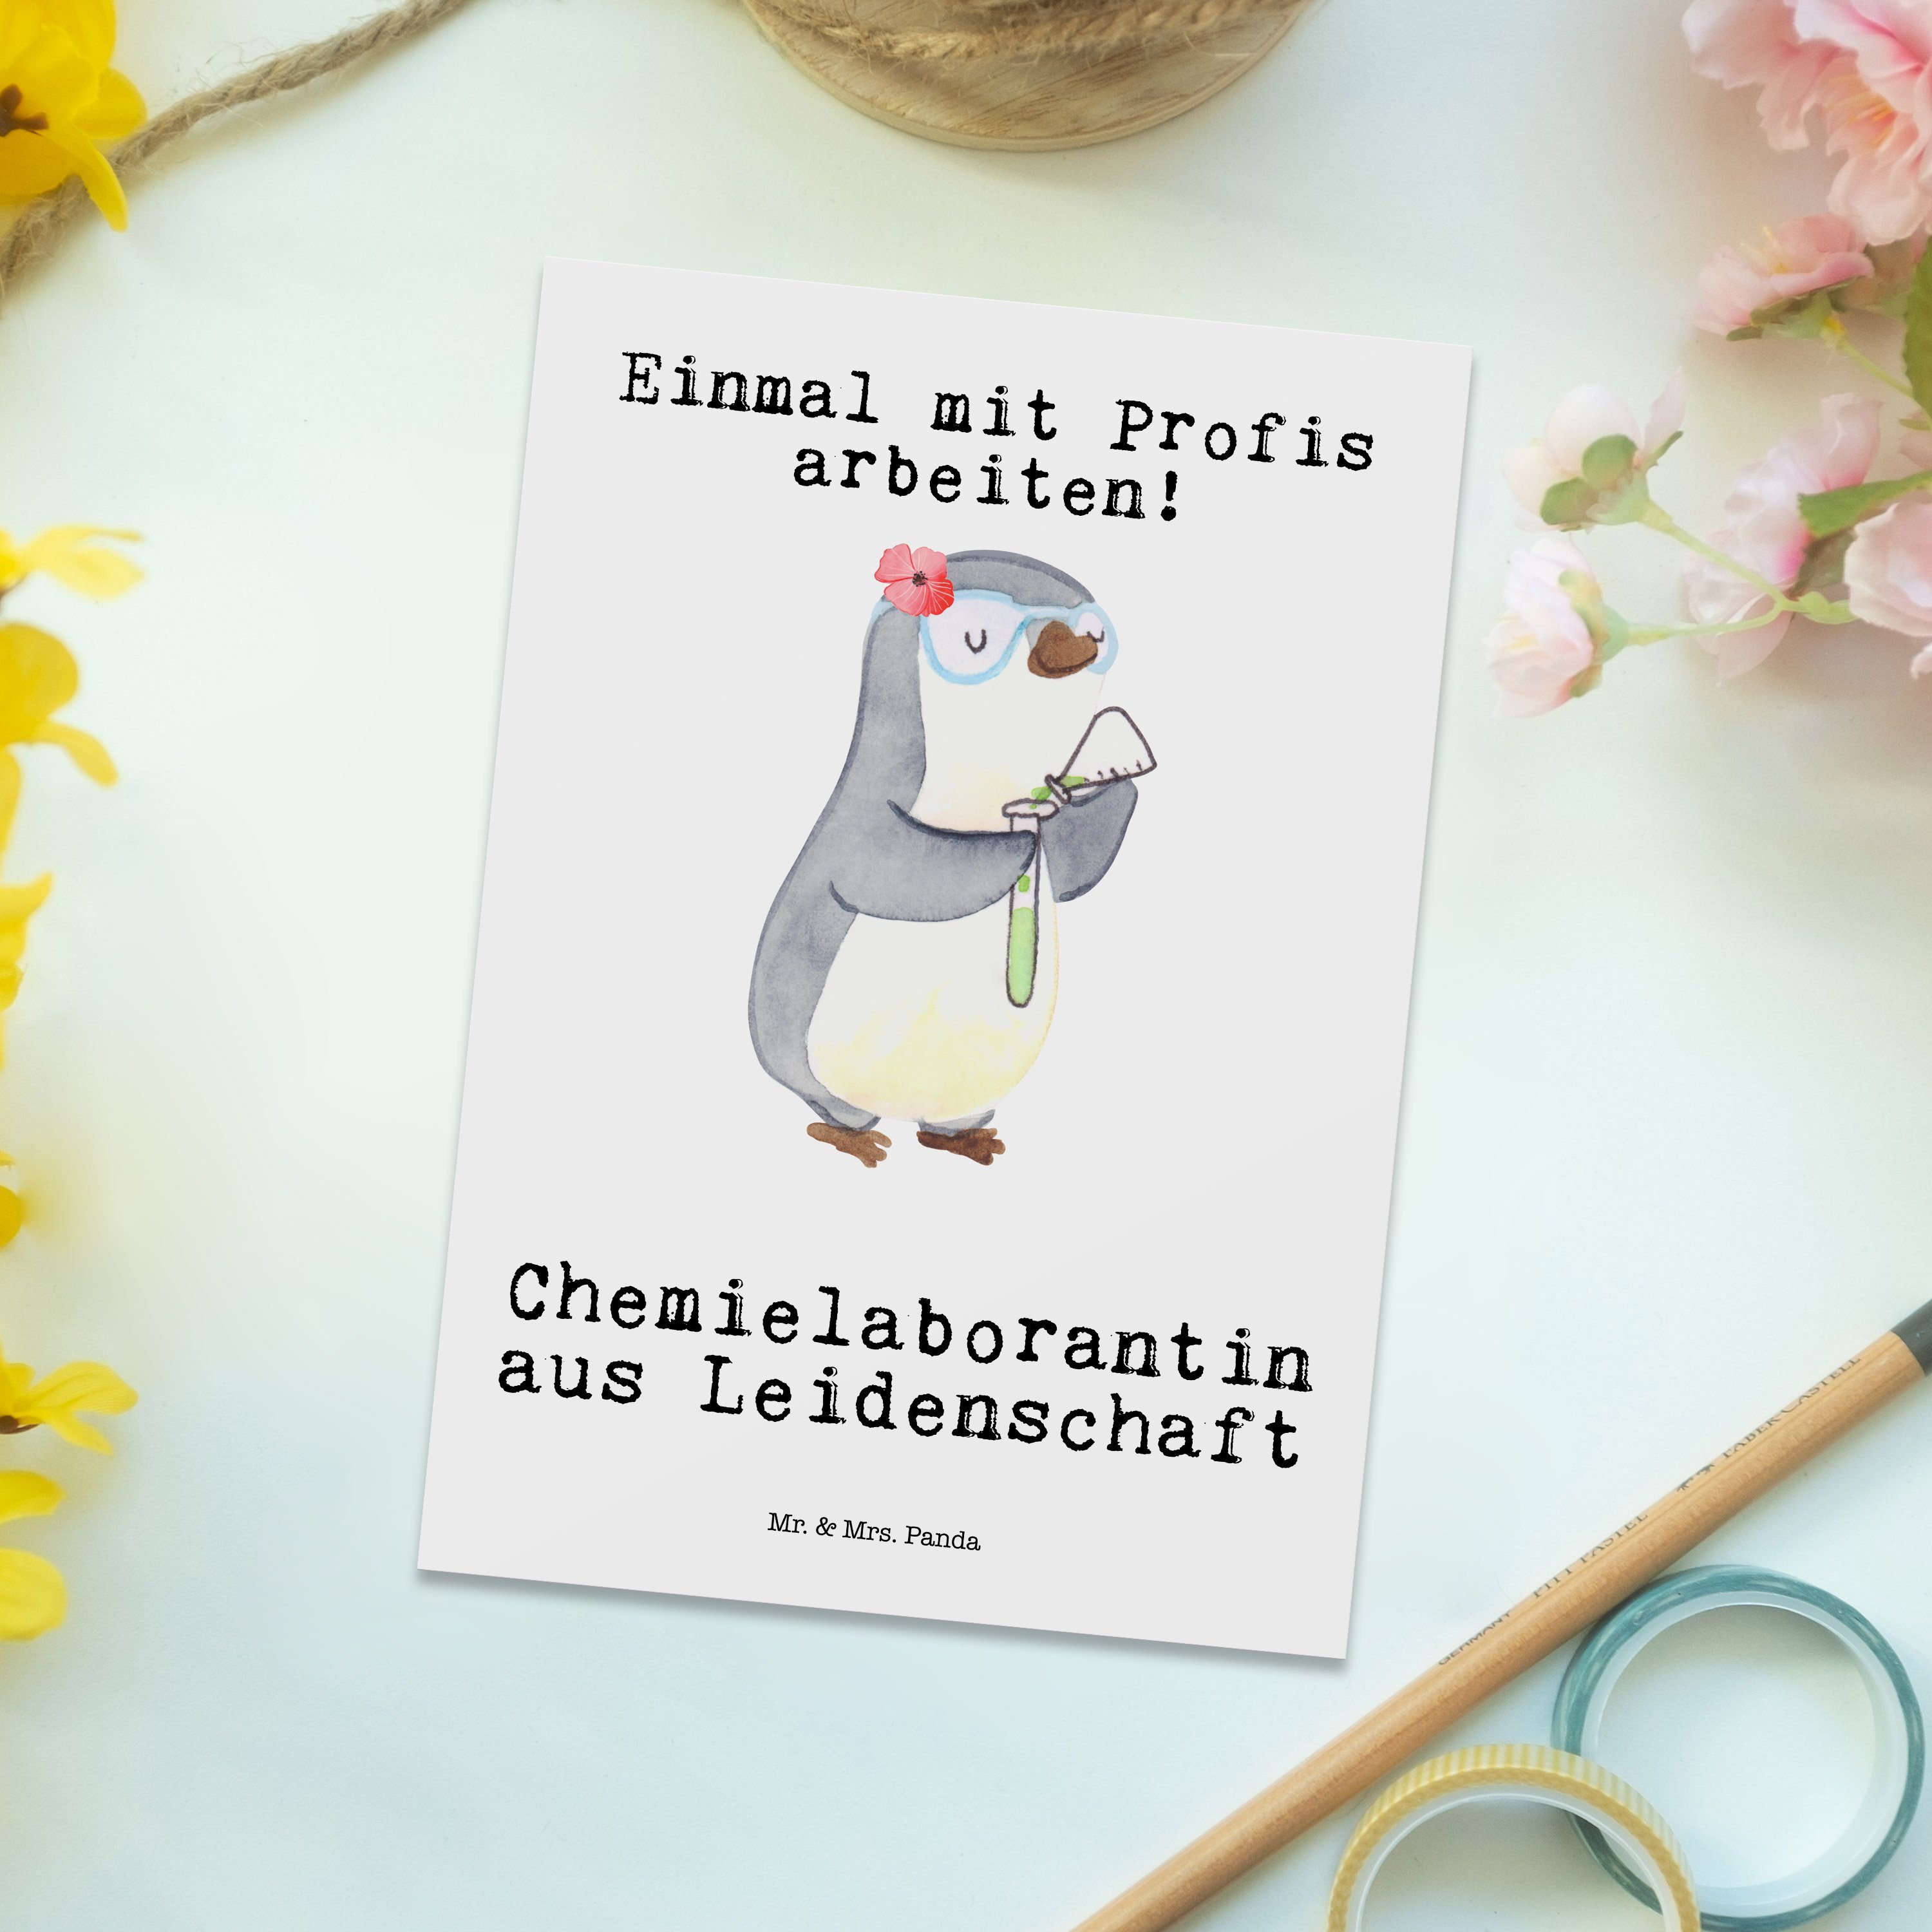 & Panda Postkarte Mrs. Weiß Geschenk, Leidenschaft - Chemielaborantin Chemieunterricht Mr. aus -